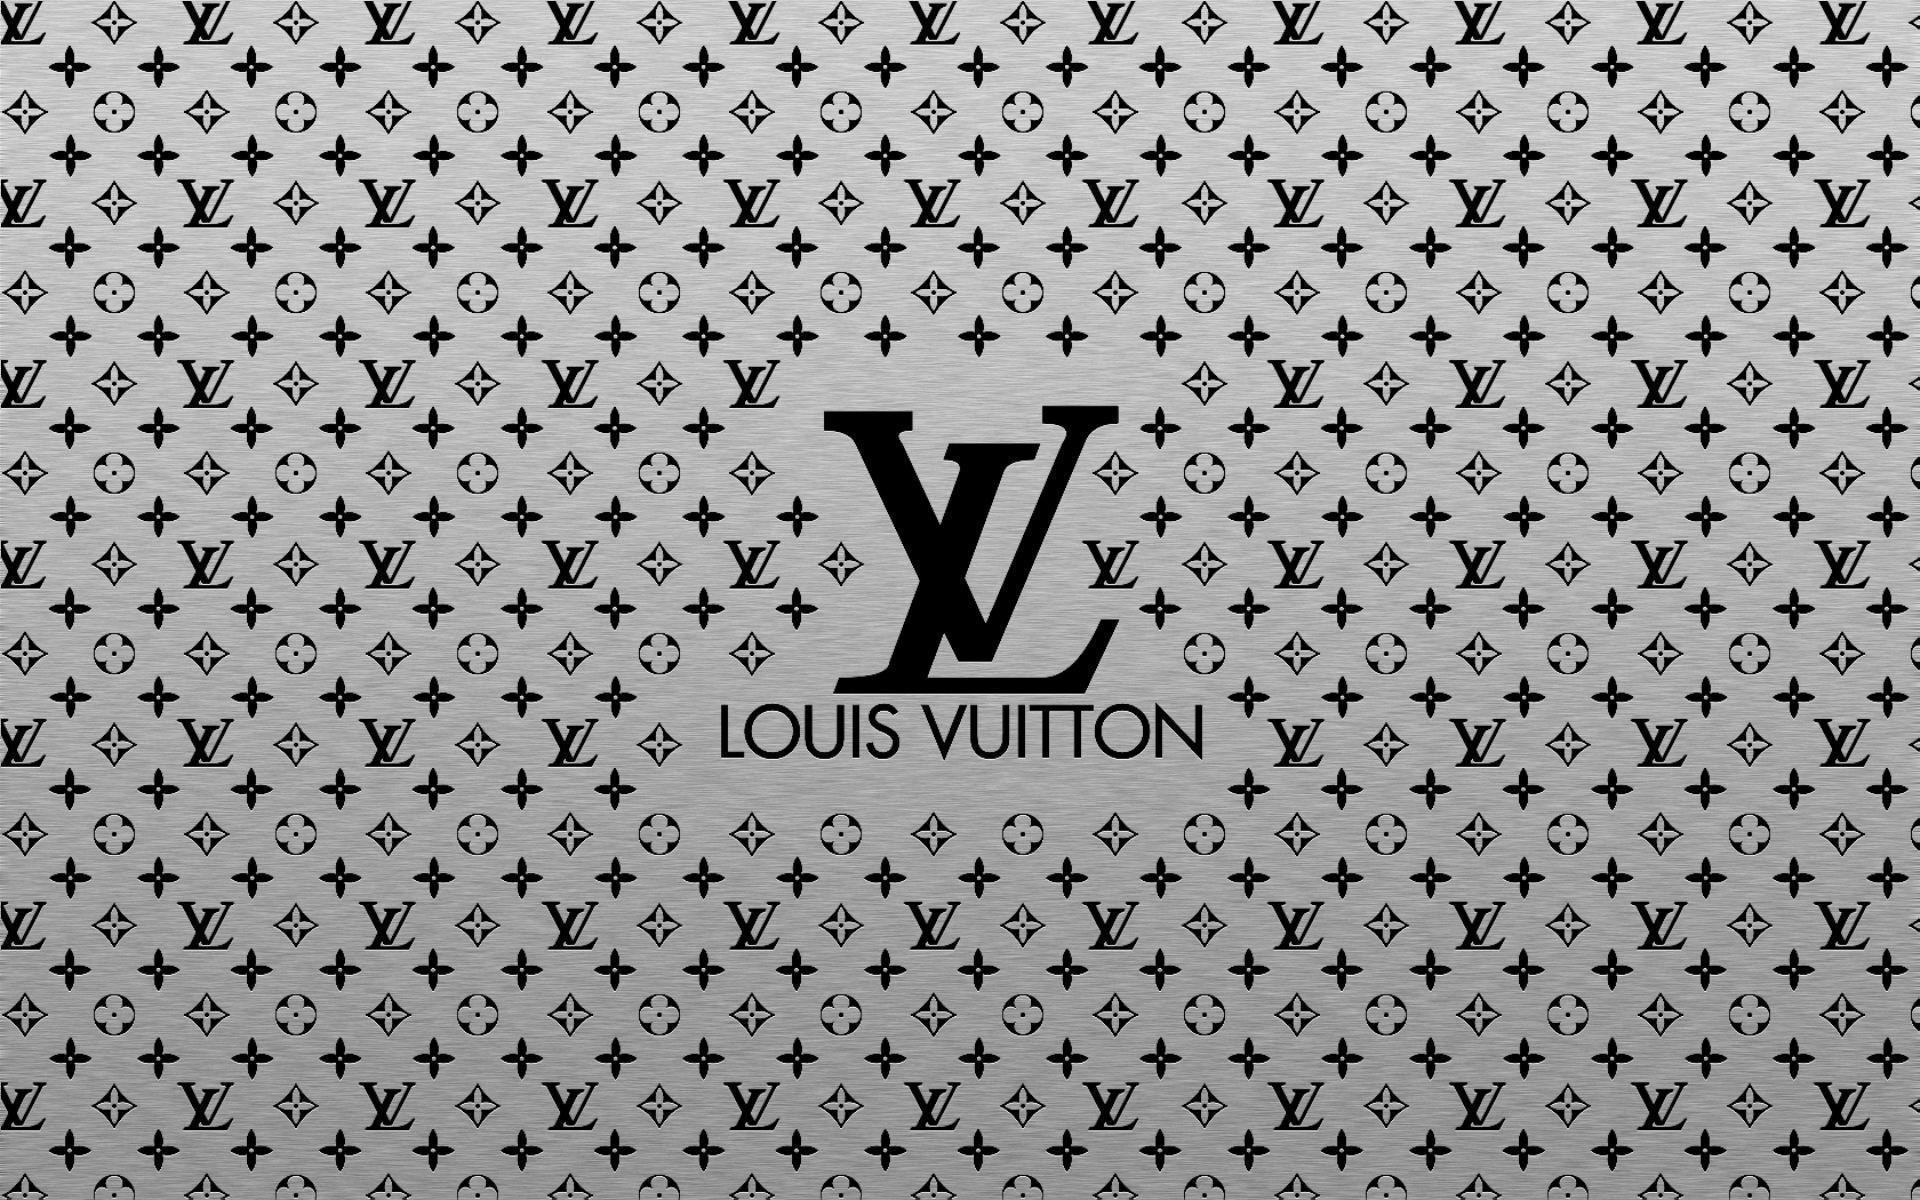 Gucci Logo Wallpaper